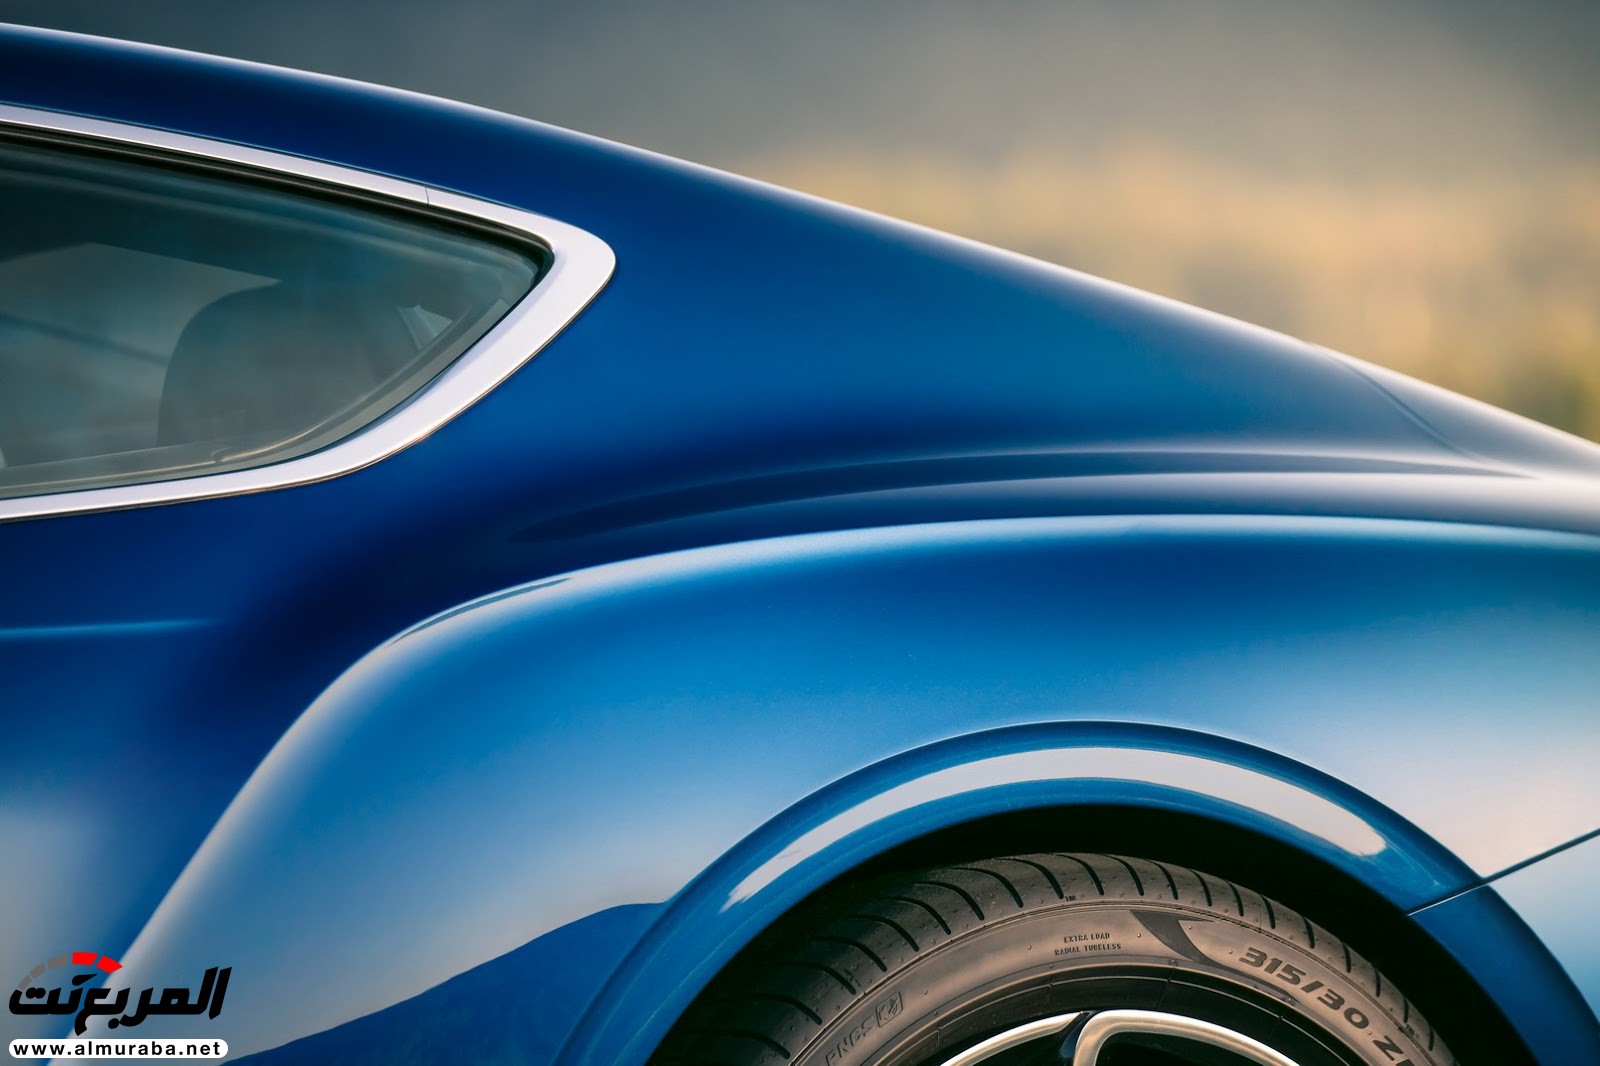 بنتلي كونتيننتال GT 2018 الجديدة كلياً "أفخم سيارة رياضية" تكشف نفسها رسمياً + صور ومواصفات 12